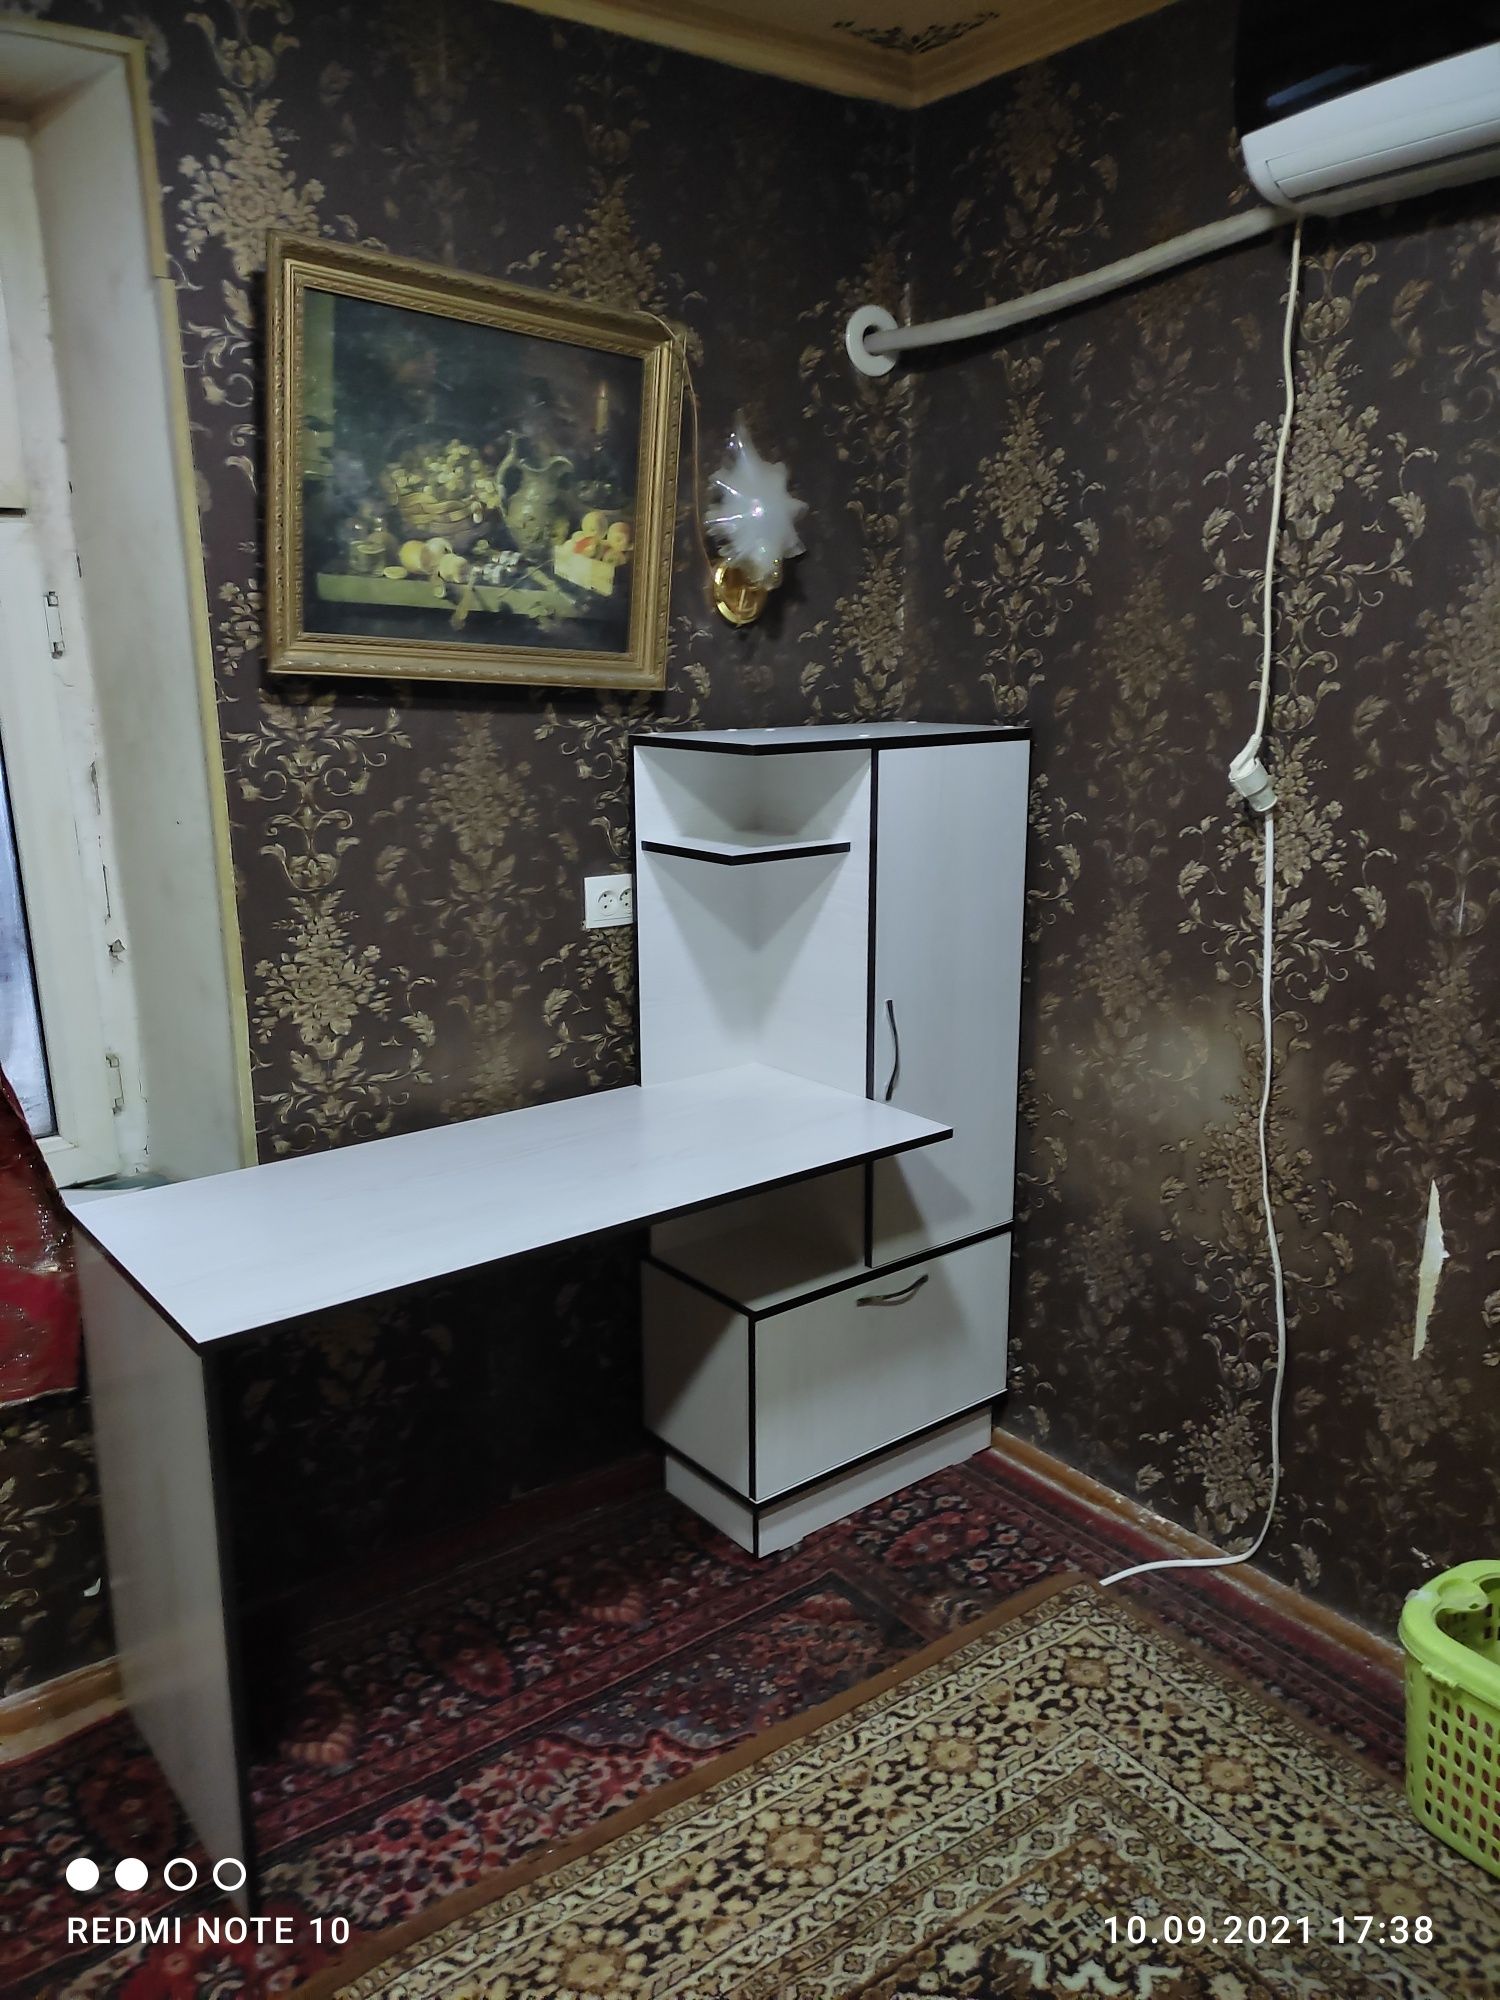 Новый письменный стол, бесплатная доставка и установка по Ташкенту